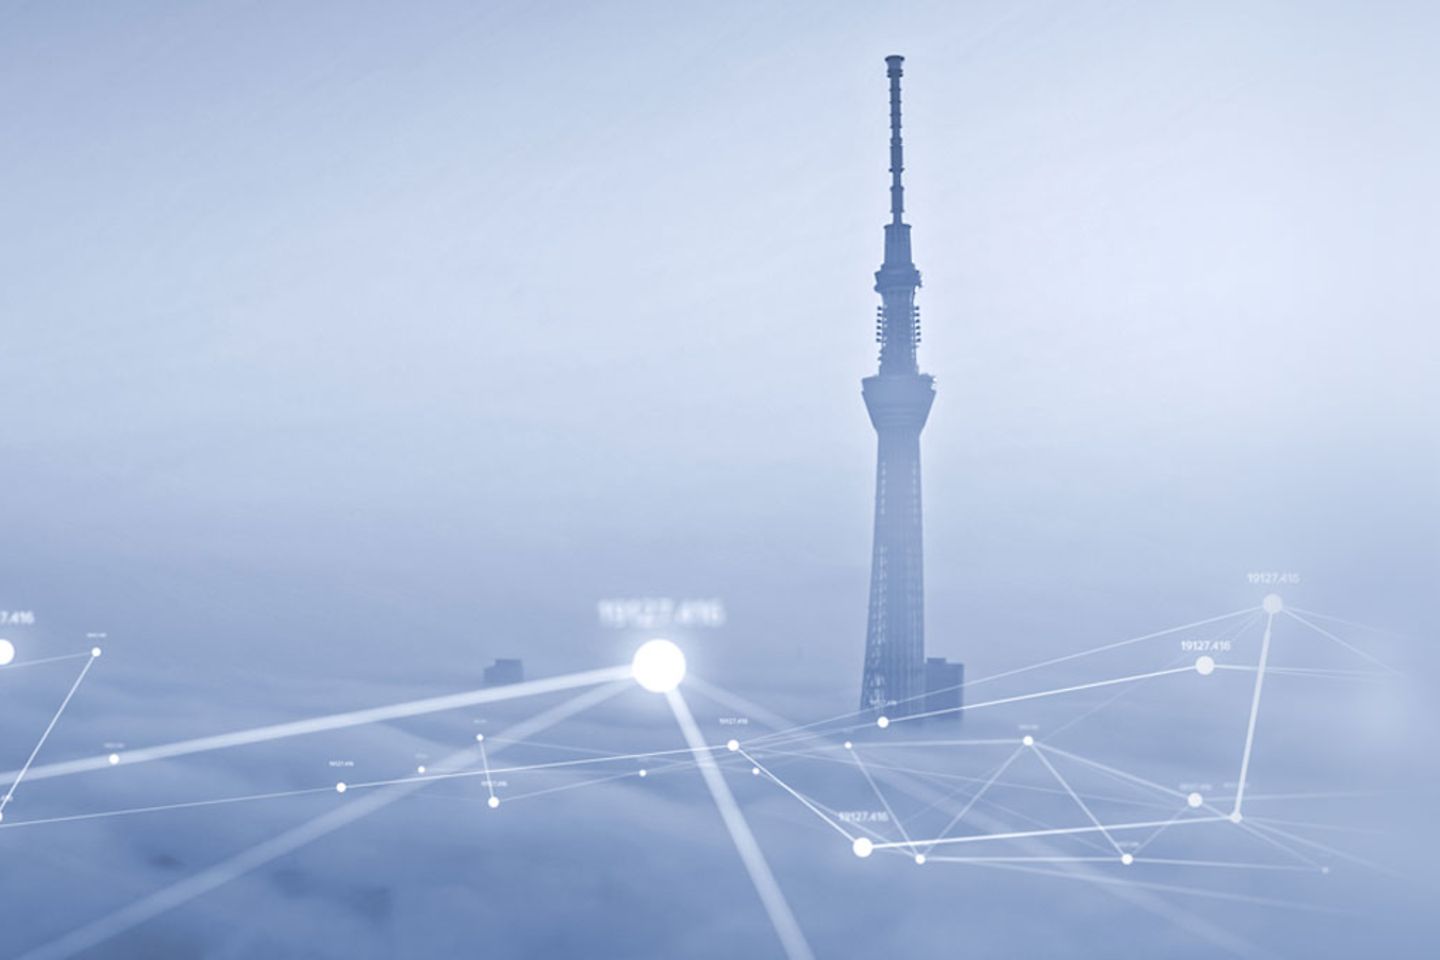 Torre de Tokio en las nubes con red